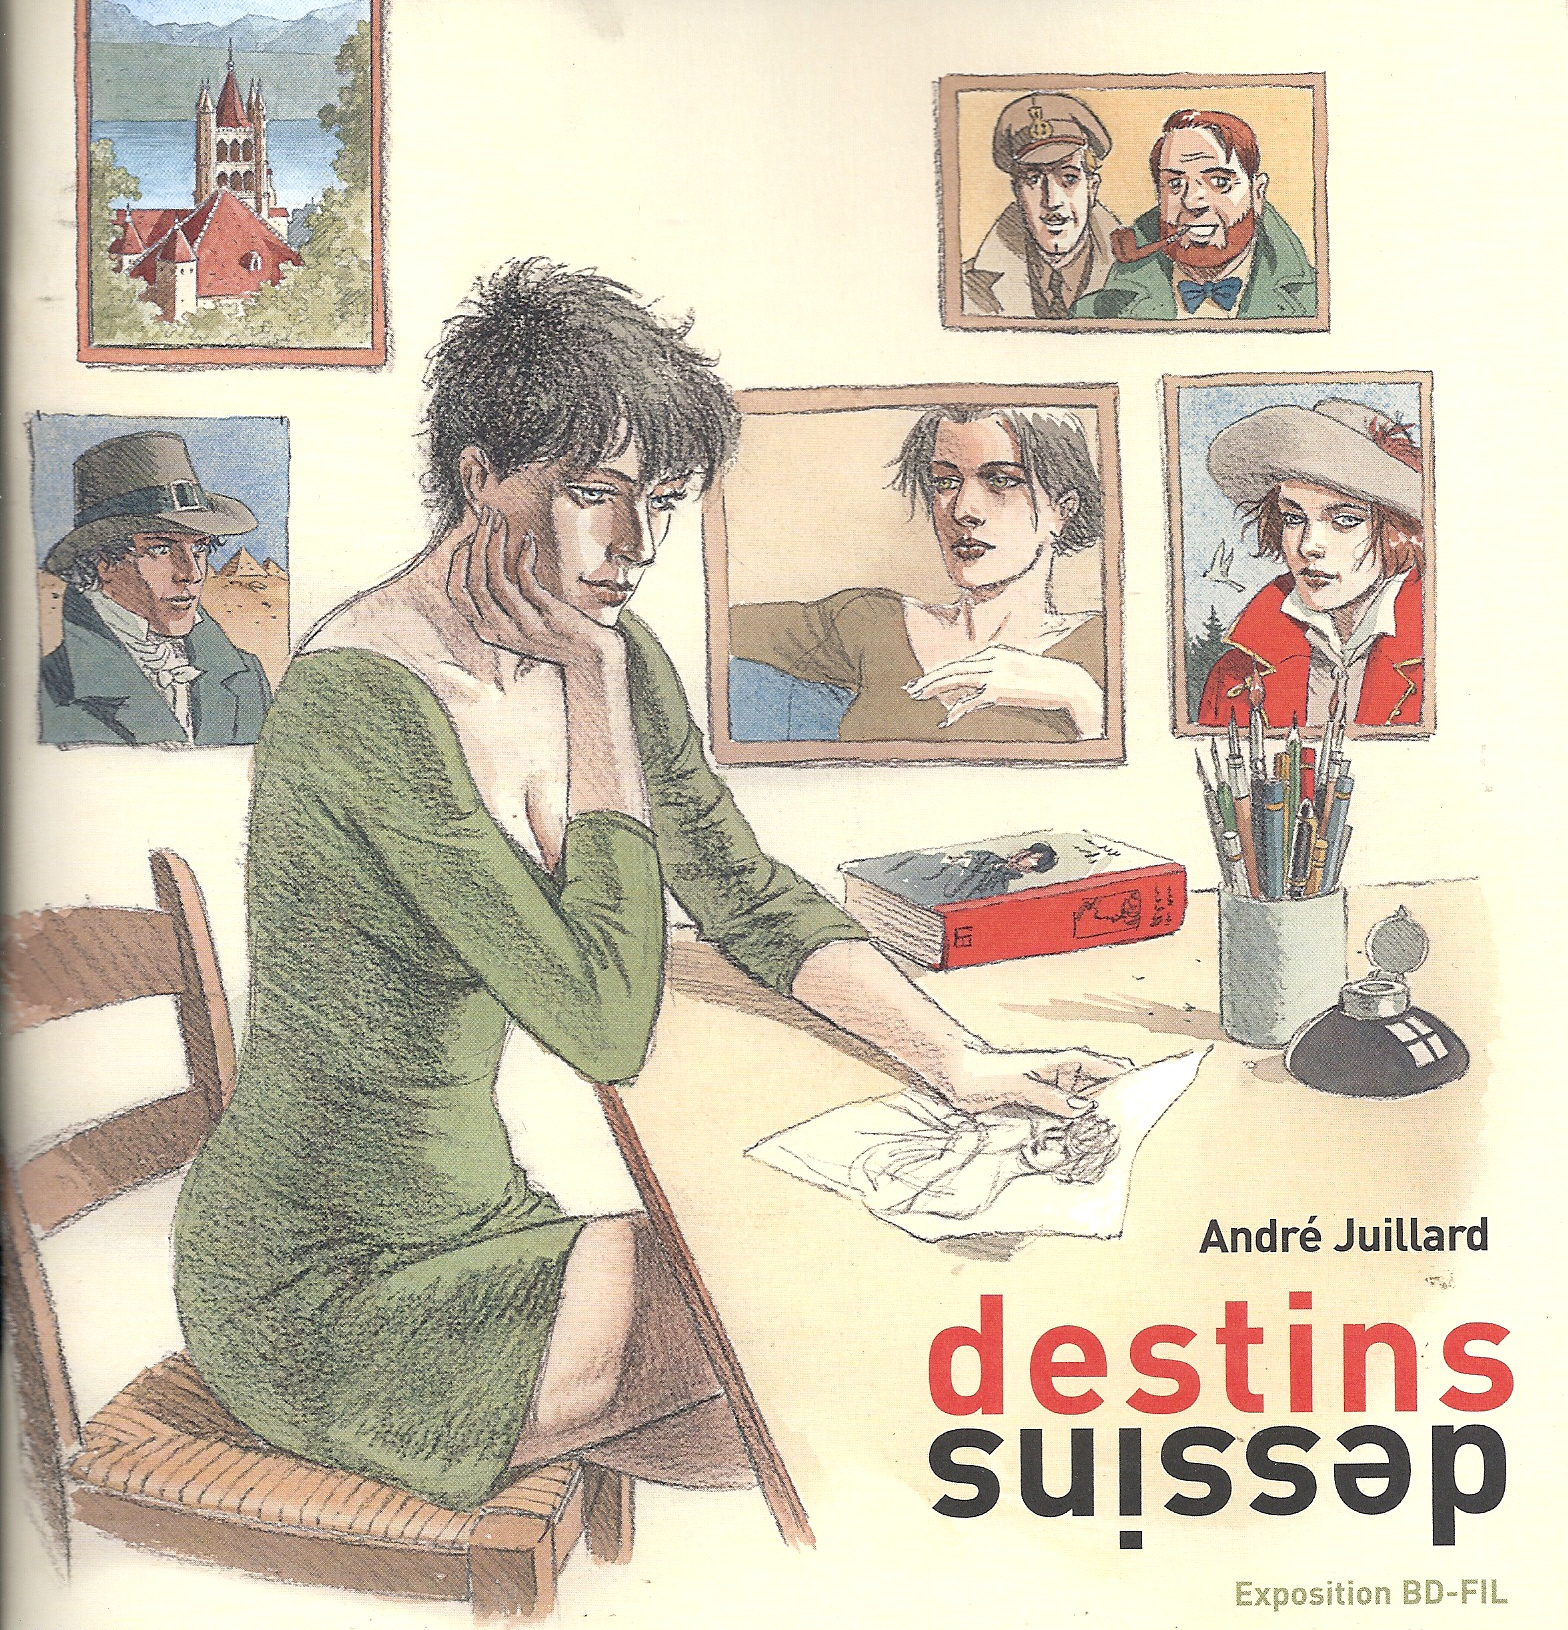 André Juillard – Destins dessins – Catalogue BD-Fil Lausanne (2008)